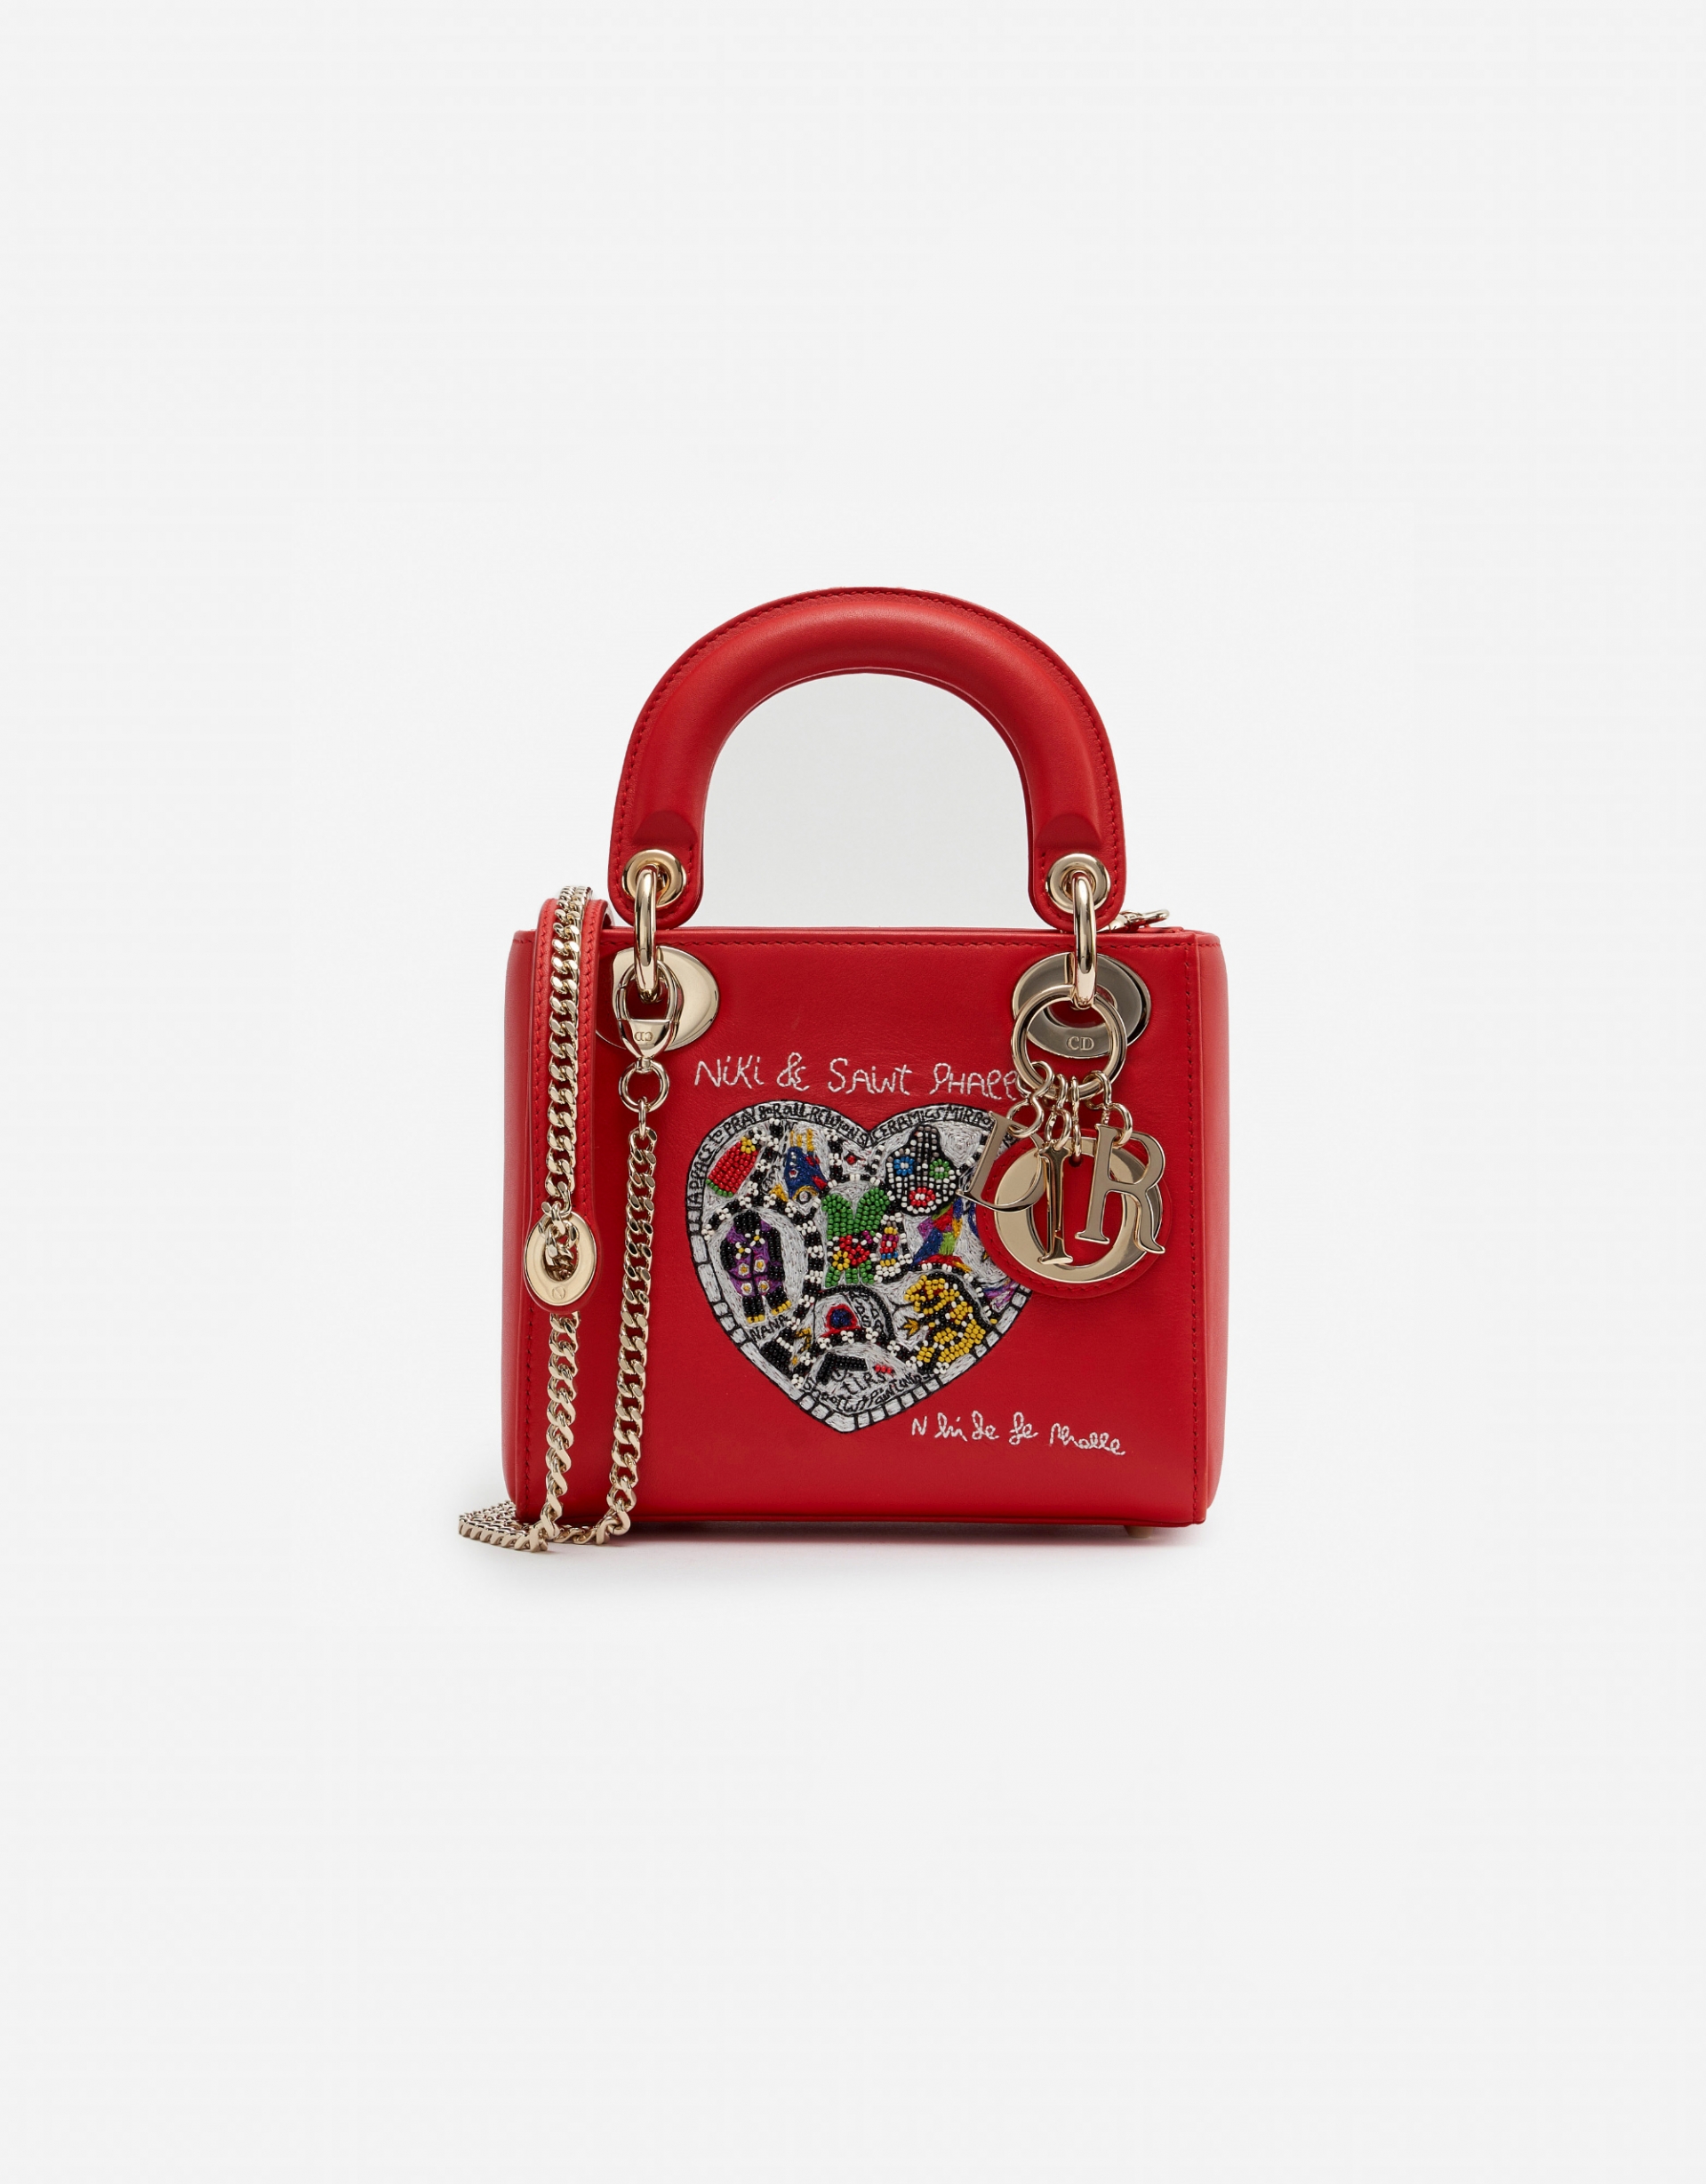 Đây là chiếc túi phiên bản giới hạn của Dior ra mắt năm 2018